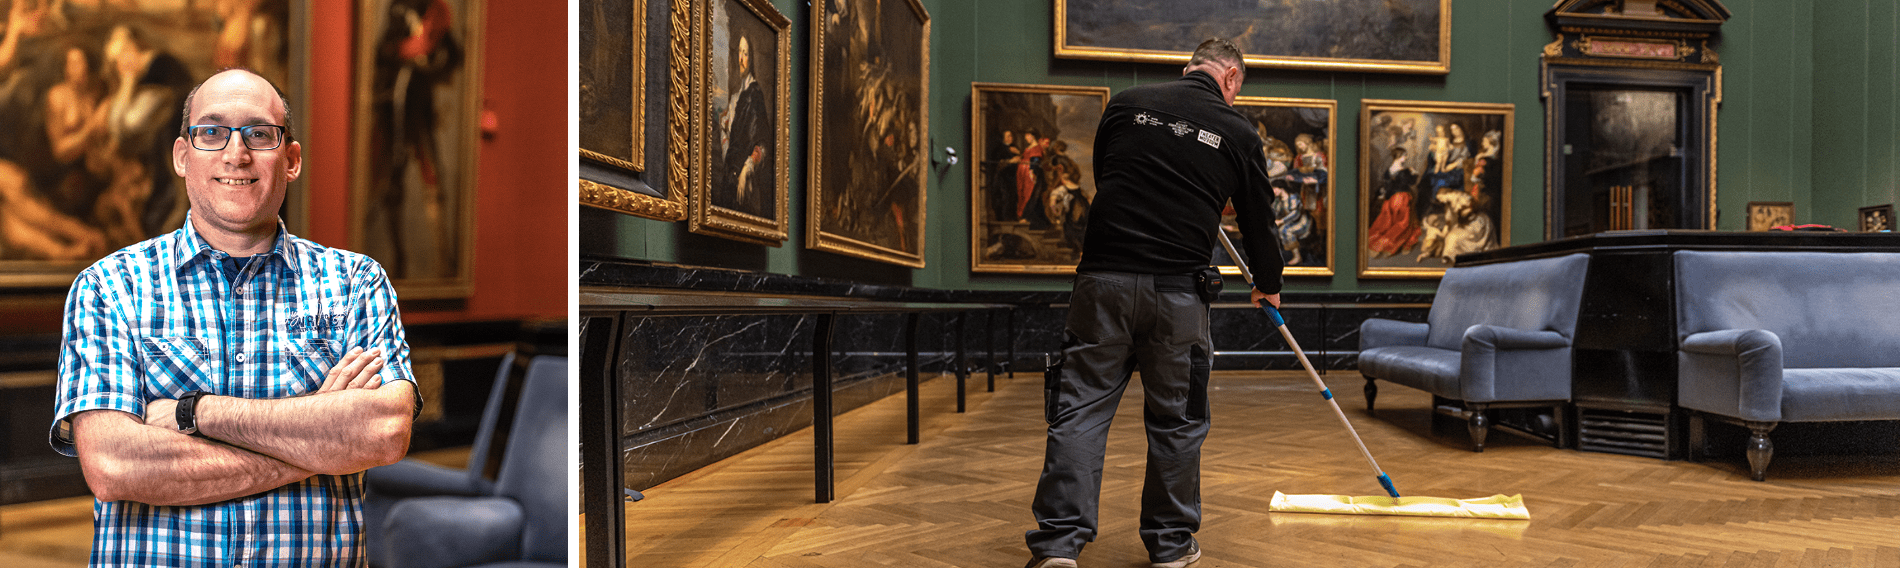 Pulizia di pavimenti nel Museo di storia dell’arte di Vienna (intervista)